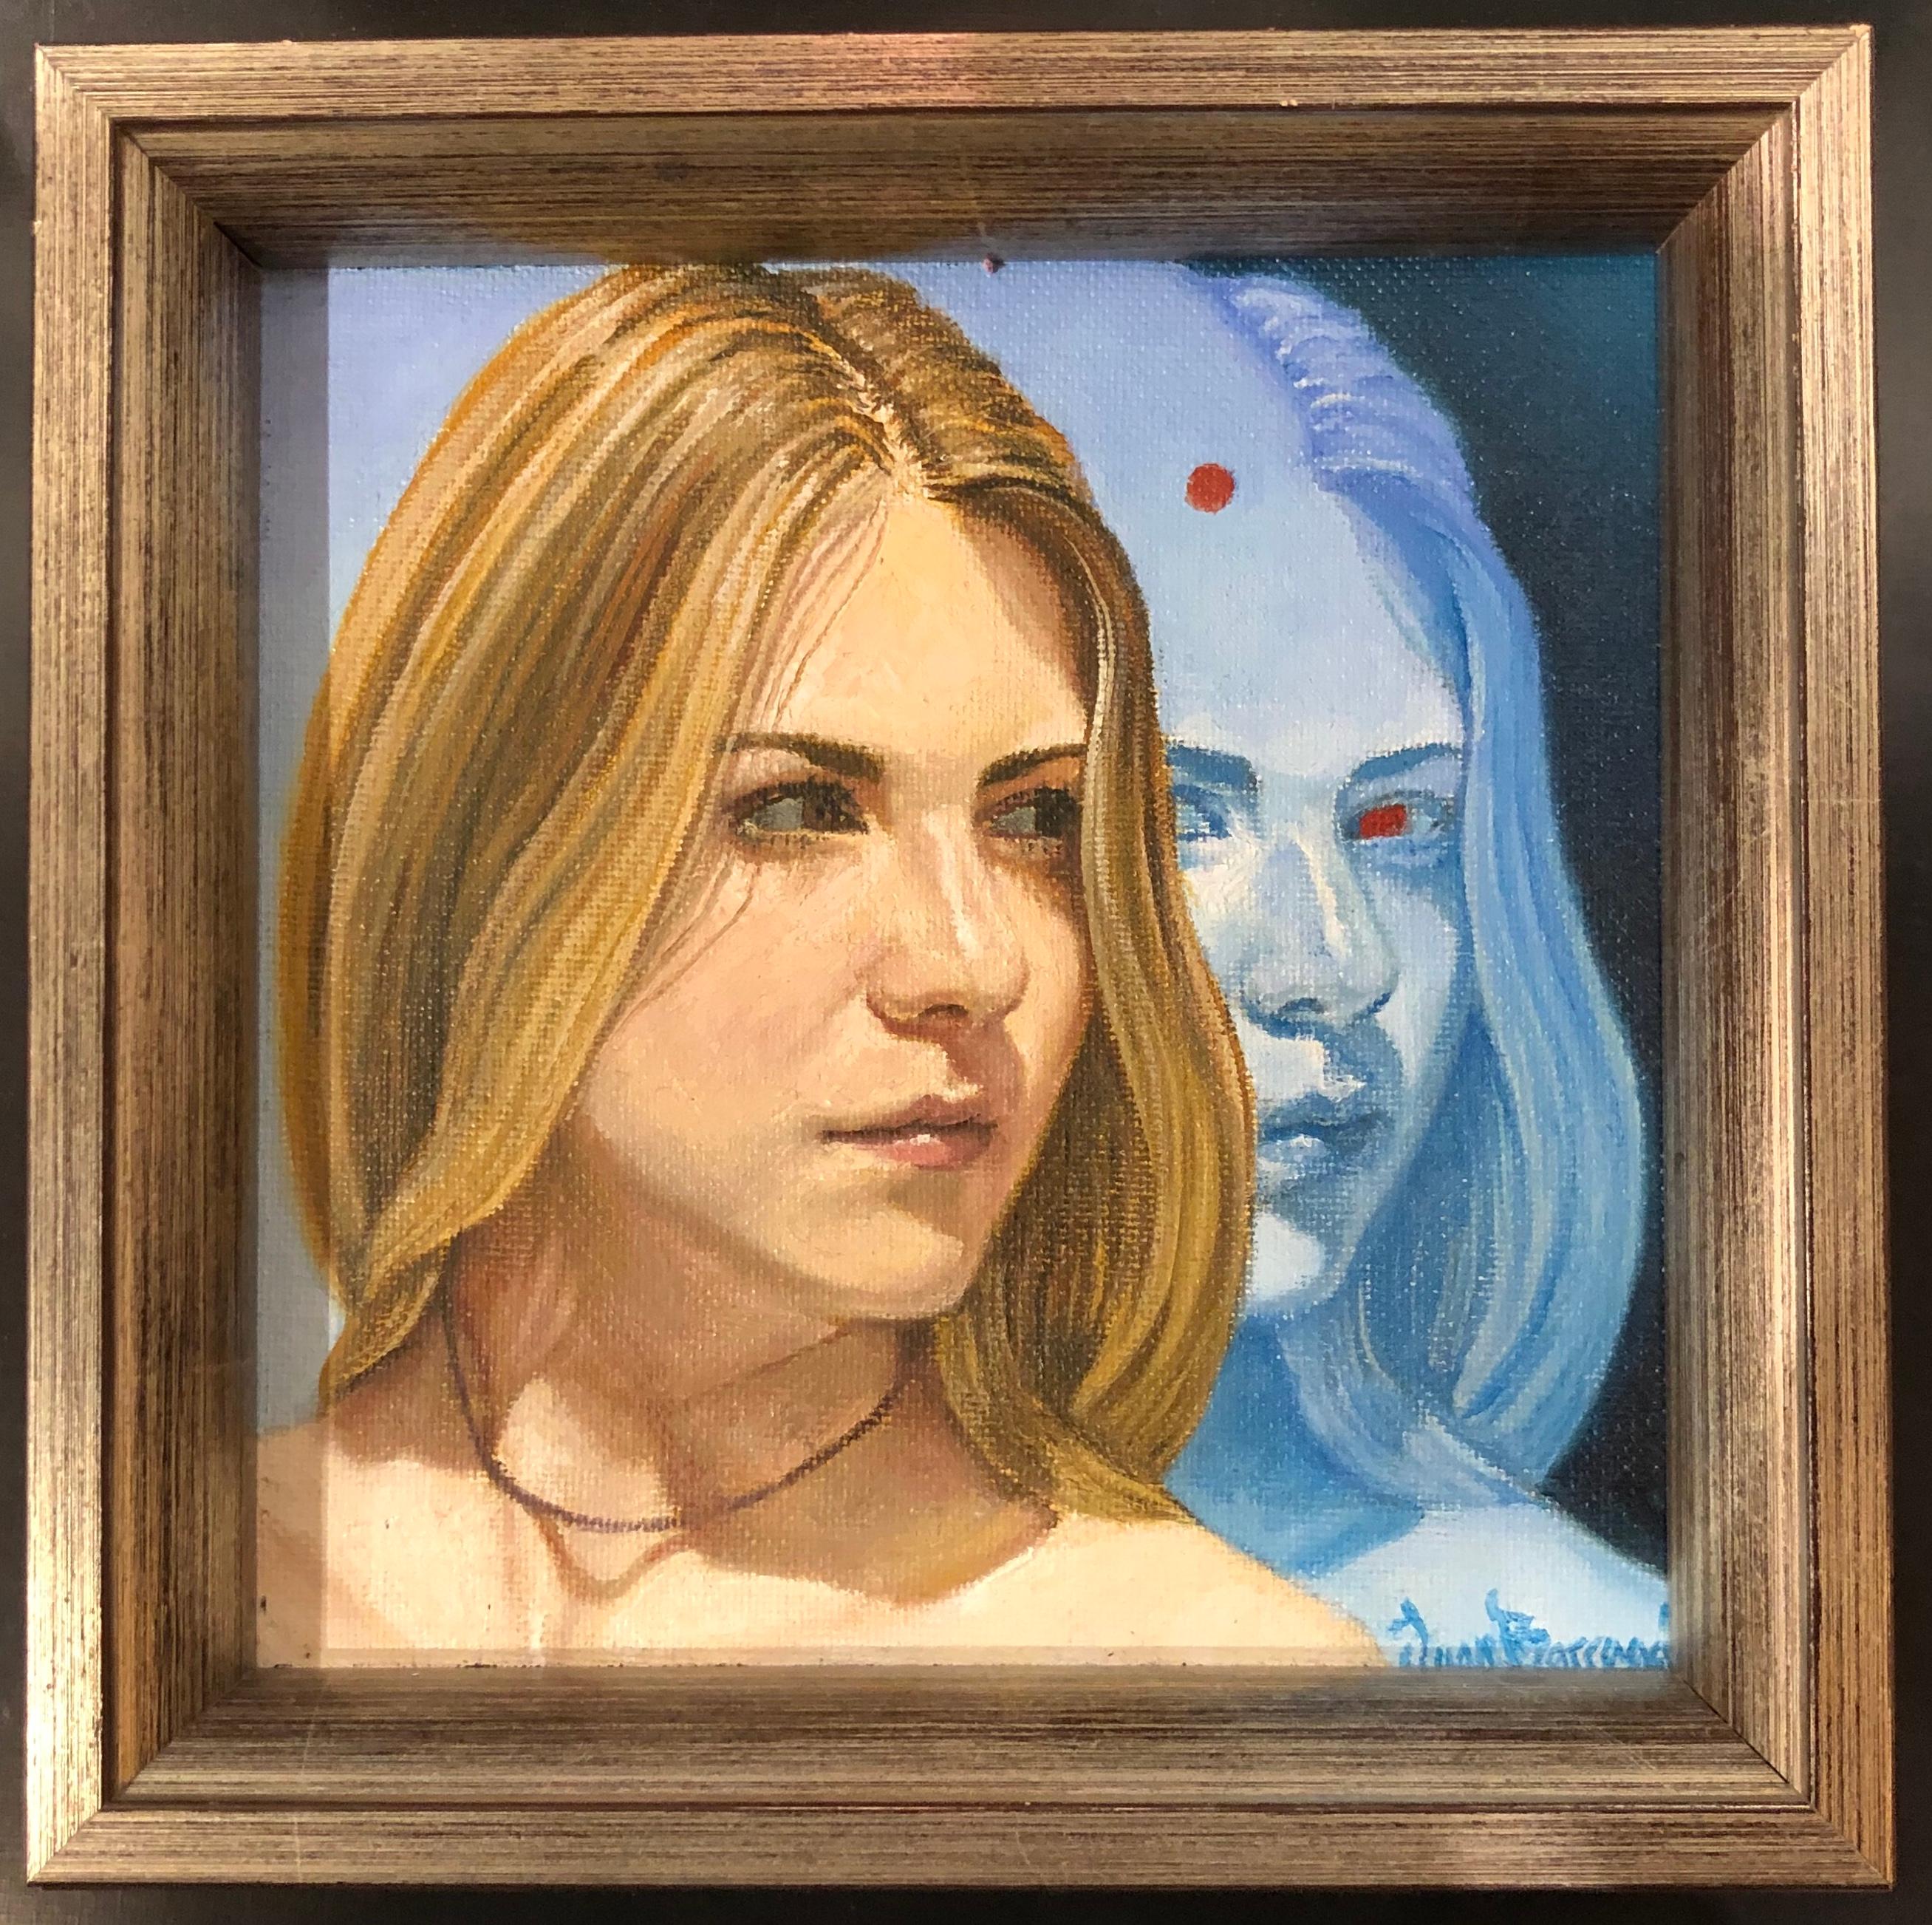 Étude pour Blue Face, Femme blonde au visage bleu réfléchissant, huile sur panneau - Painting de Juan Barragán